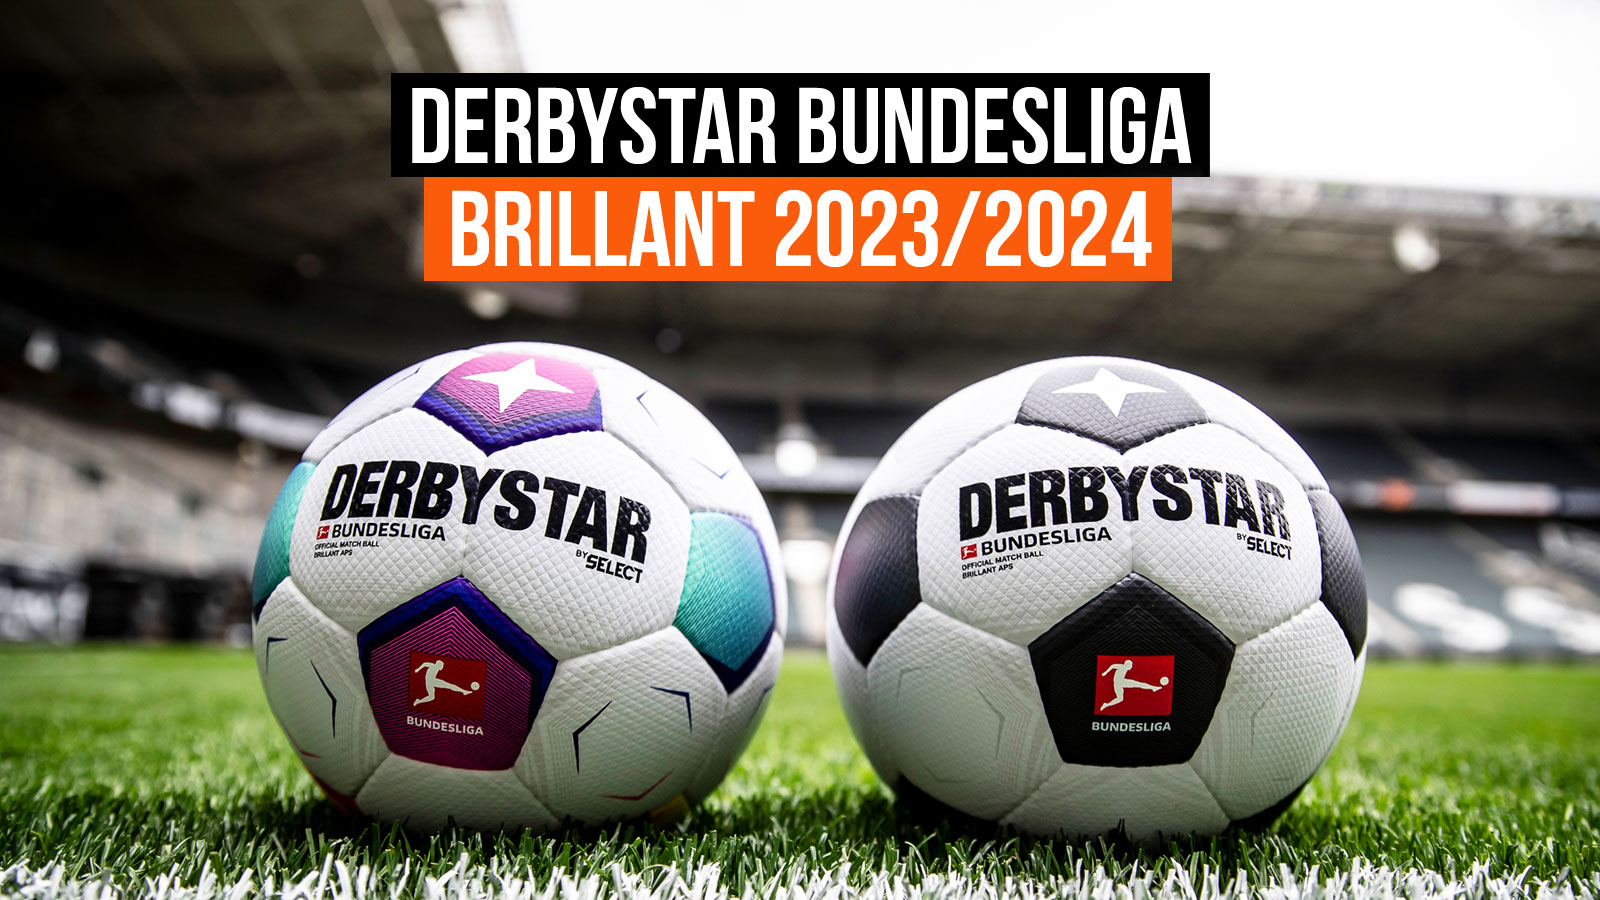 Die 2 Derbystar-Bundesliga Brillant APS 2023-2024 Spielbälle